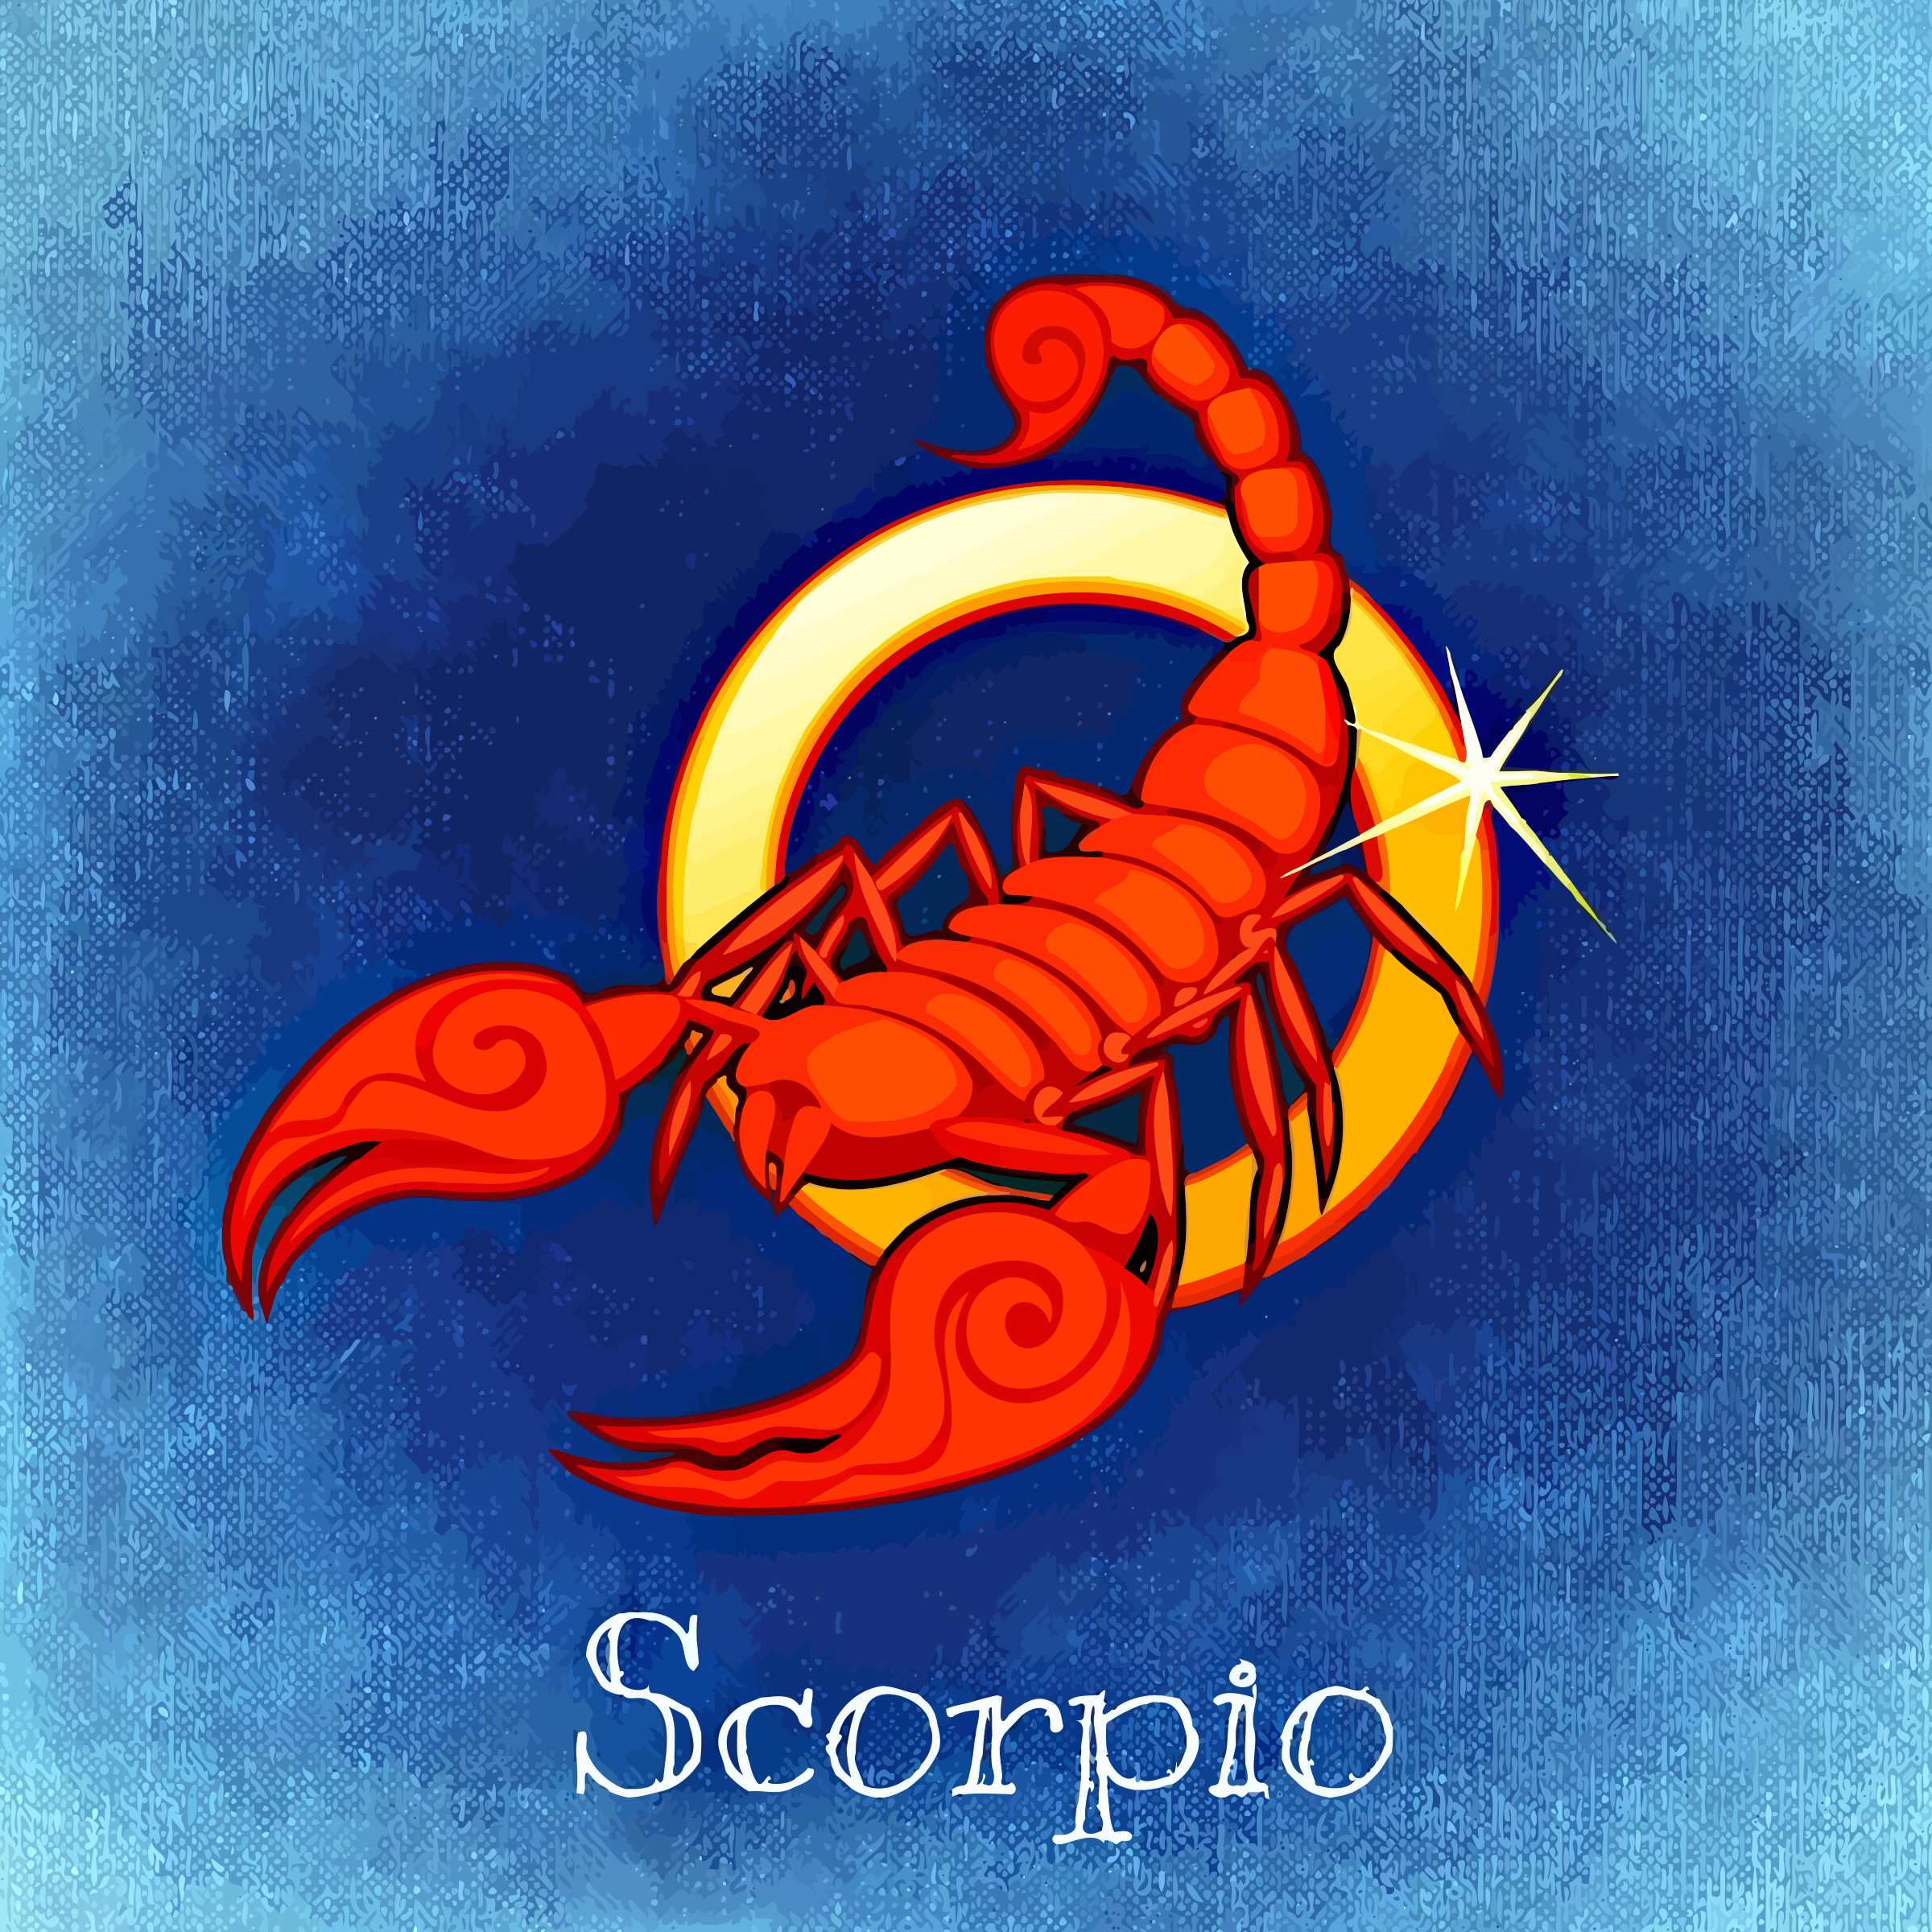 Мужчины рожденные в год дракона. Знак зодиака Скорпион. Скорпион знак зодиака Скорпион. Скорпион знак зодиака символ. Скорпион рисунок.